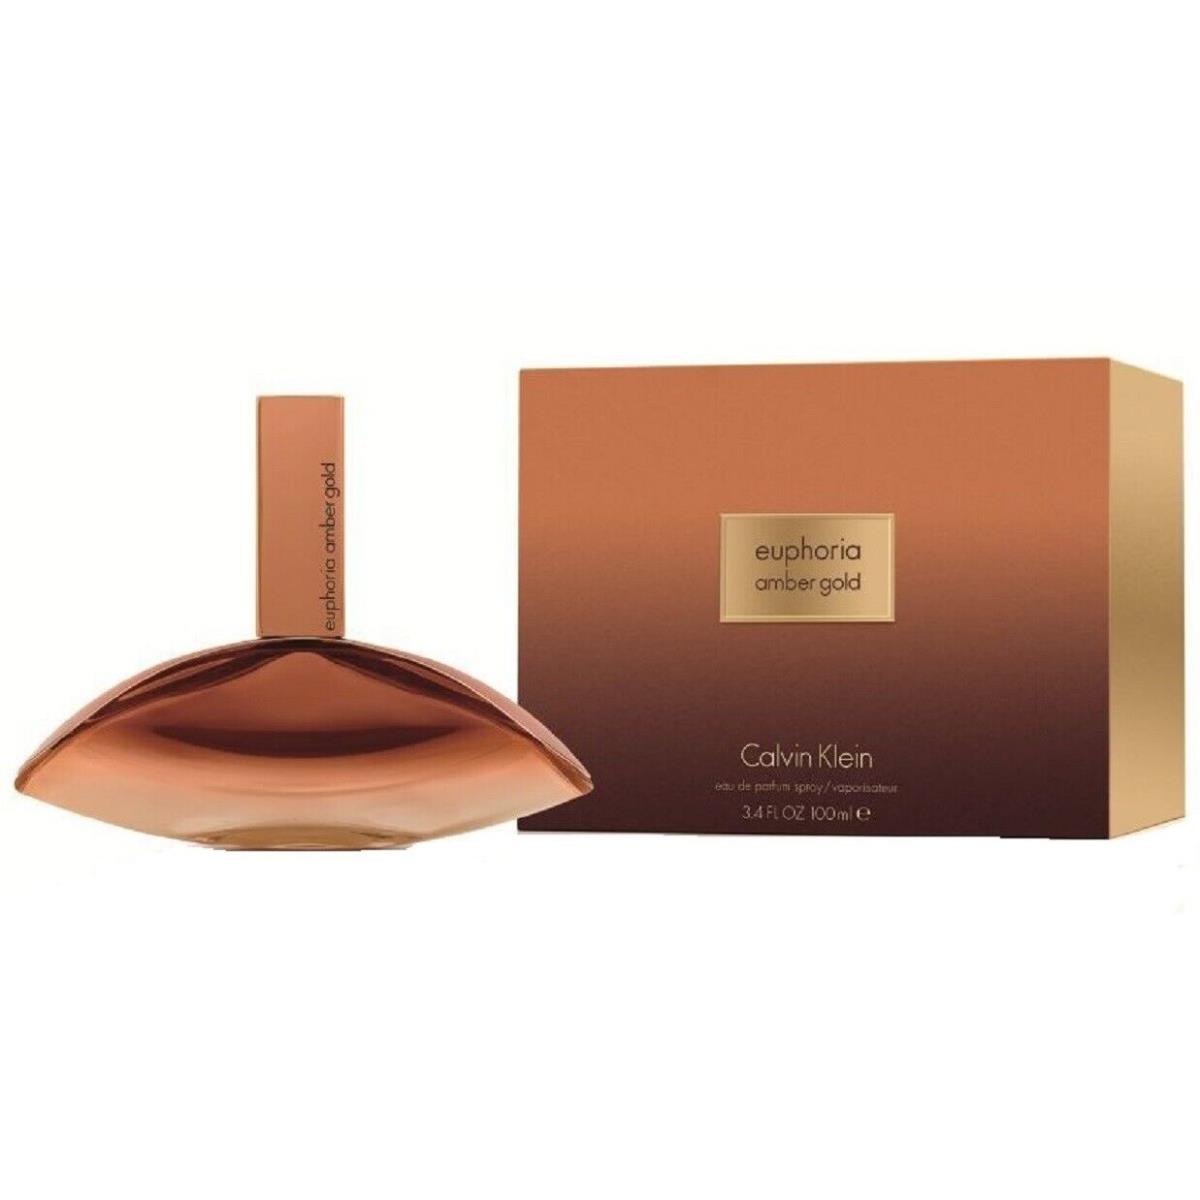 Calvin Klein Euphoria Amber Gold For Women Perfume 3.4 oz 100 ml Edp Spray